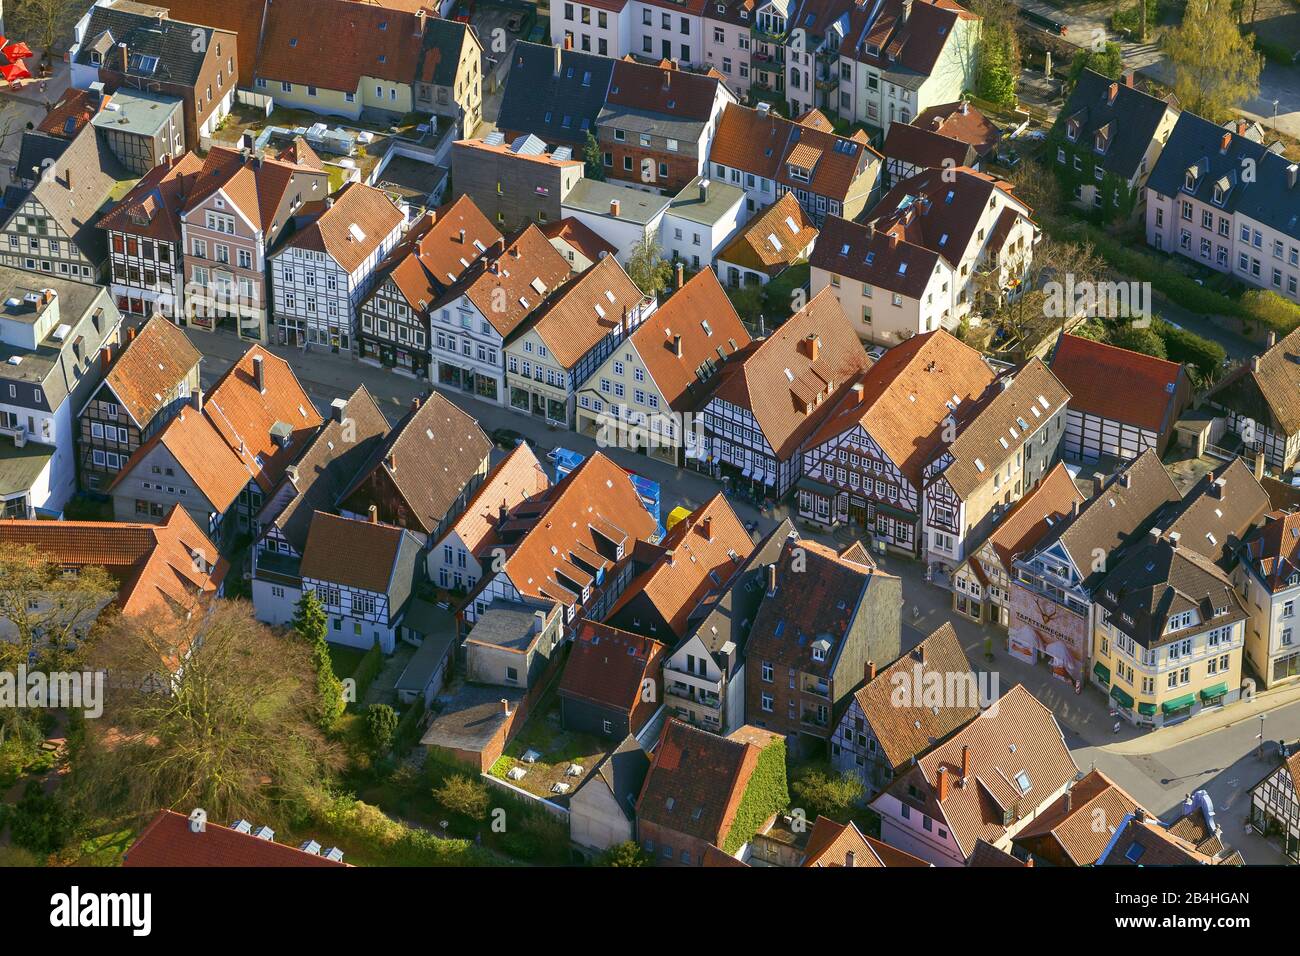 , vieille ville de Detmold avec maisons à colombages à la rue Krumme, 22.04.2013, vue aérienne, Allemagne, Rhénanie-du-Nord-Westphalie, Westphalie de l'est, Detmold Banque D'Images